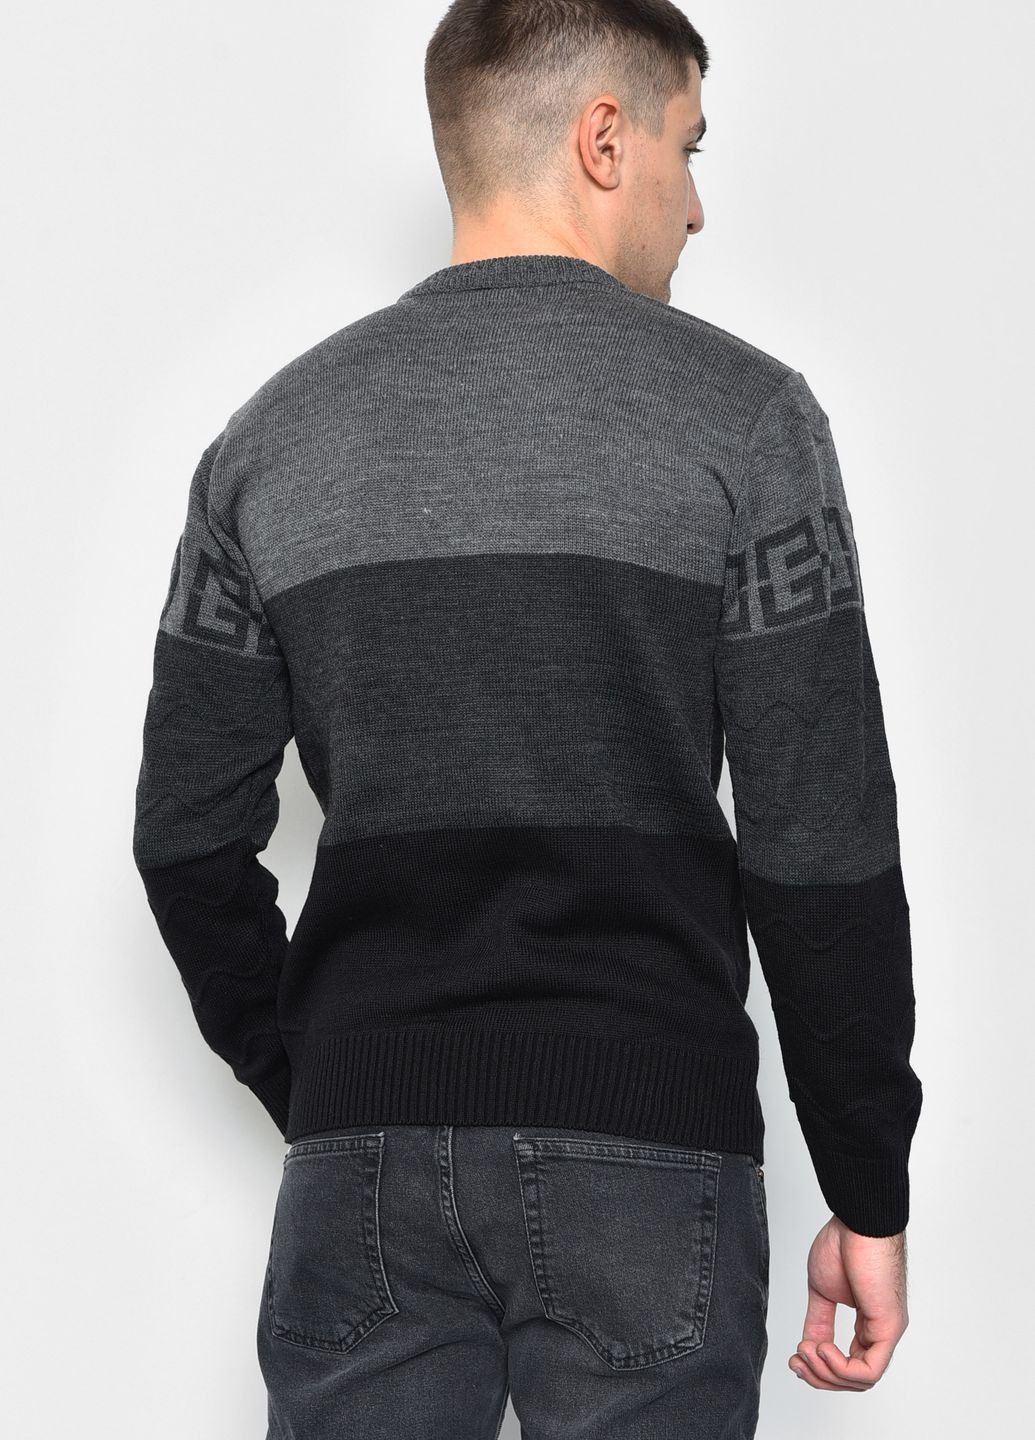 Темно-серый демисезонный свитер мужской темно-серого цвета пуловер Let's Shop